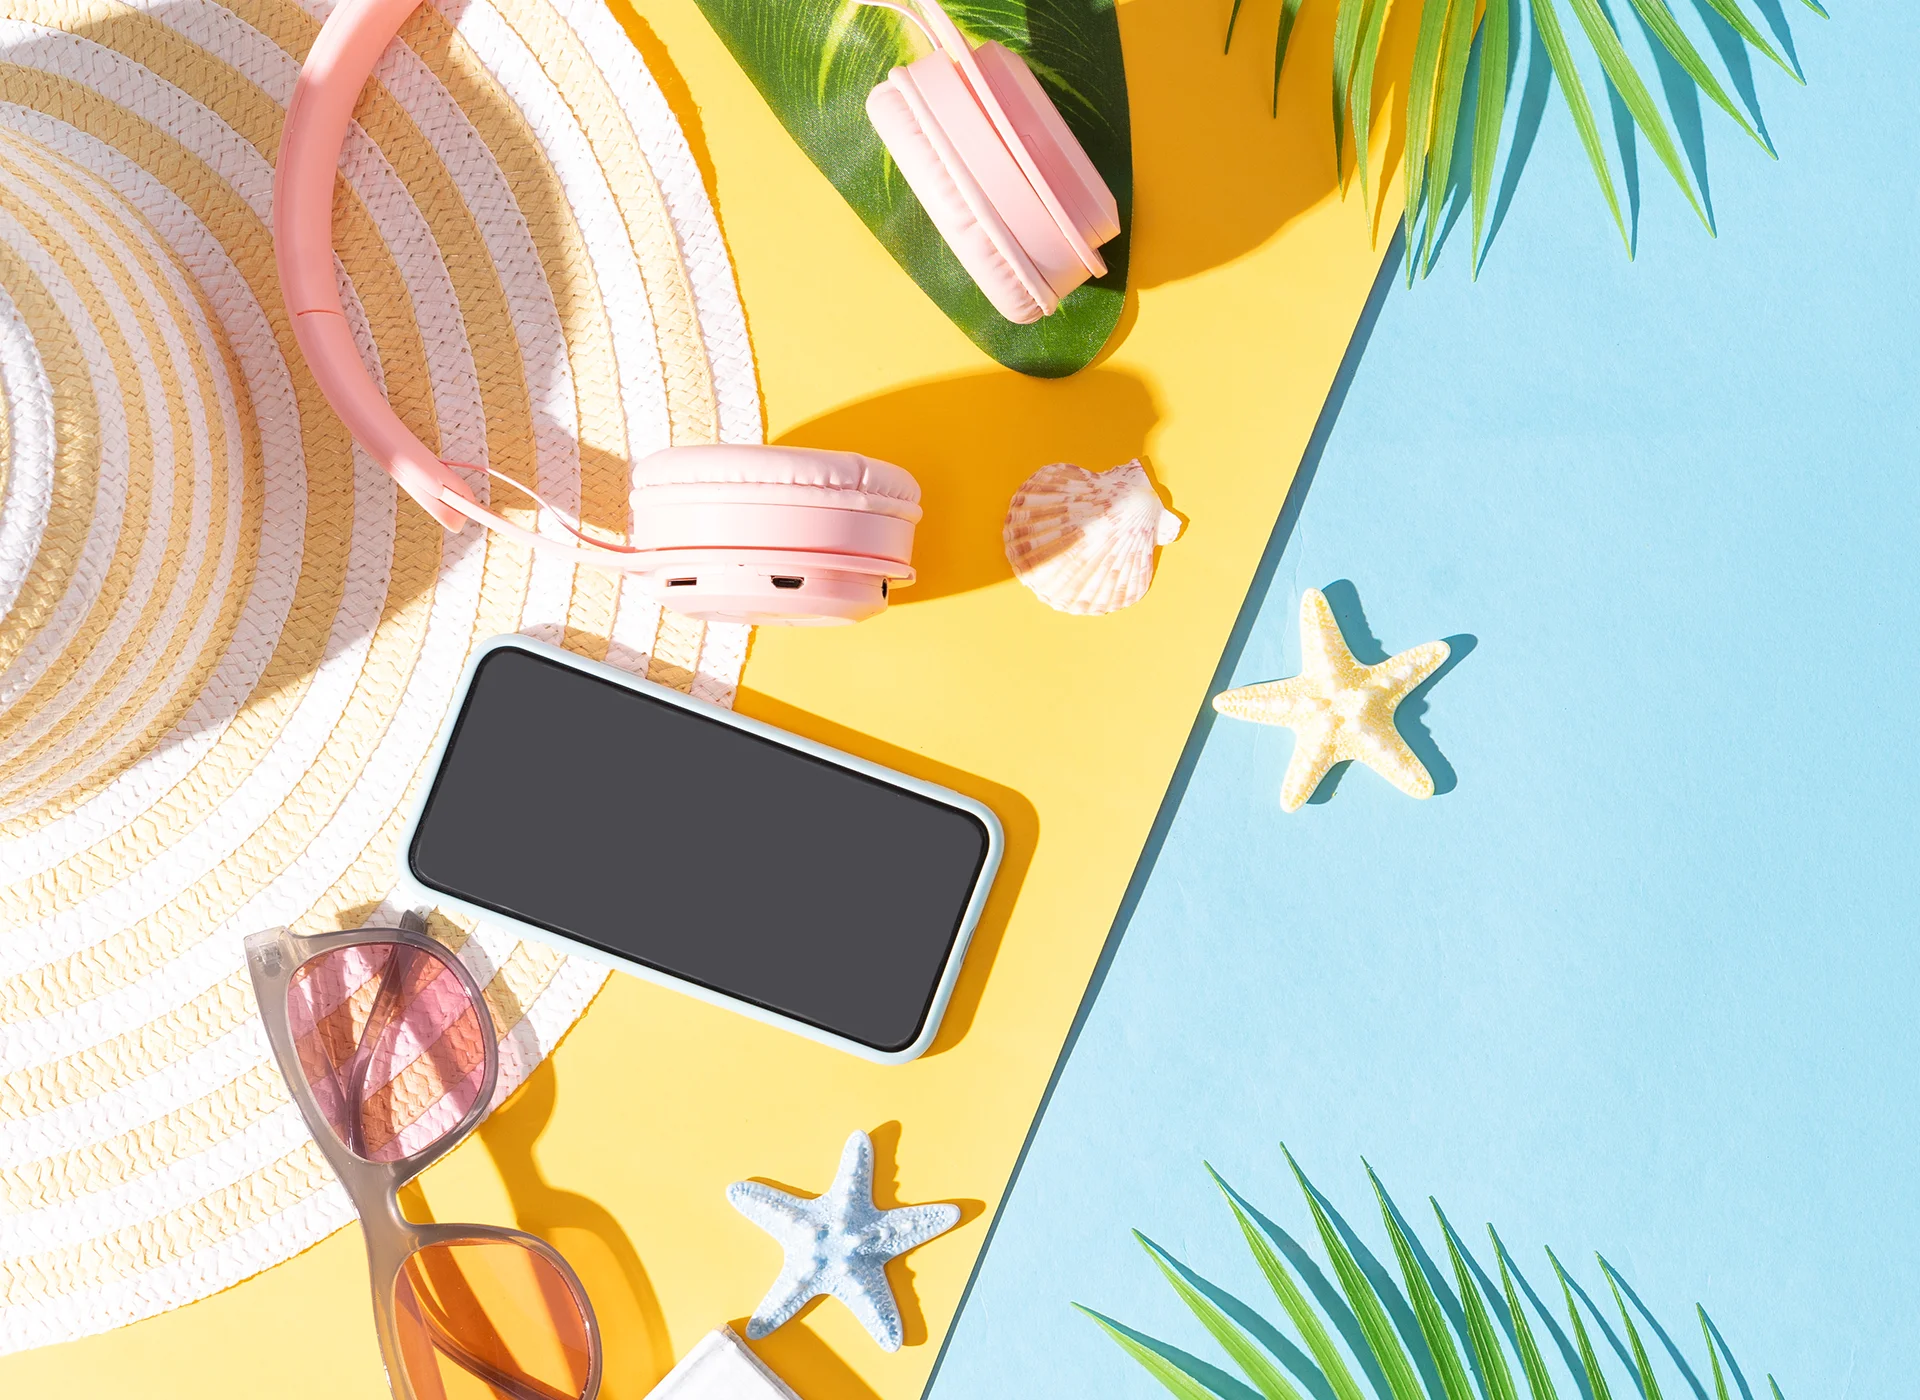 Imatge de fons d'un telèfon mòbil amb diferents estris i objectes estiuencs i de platja.